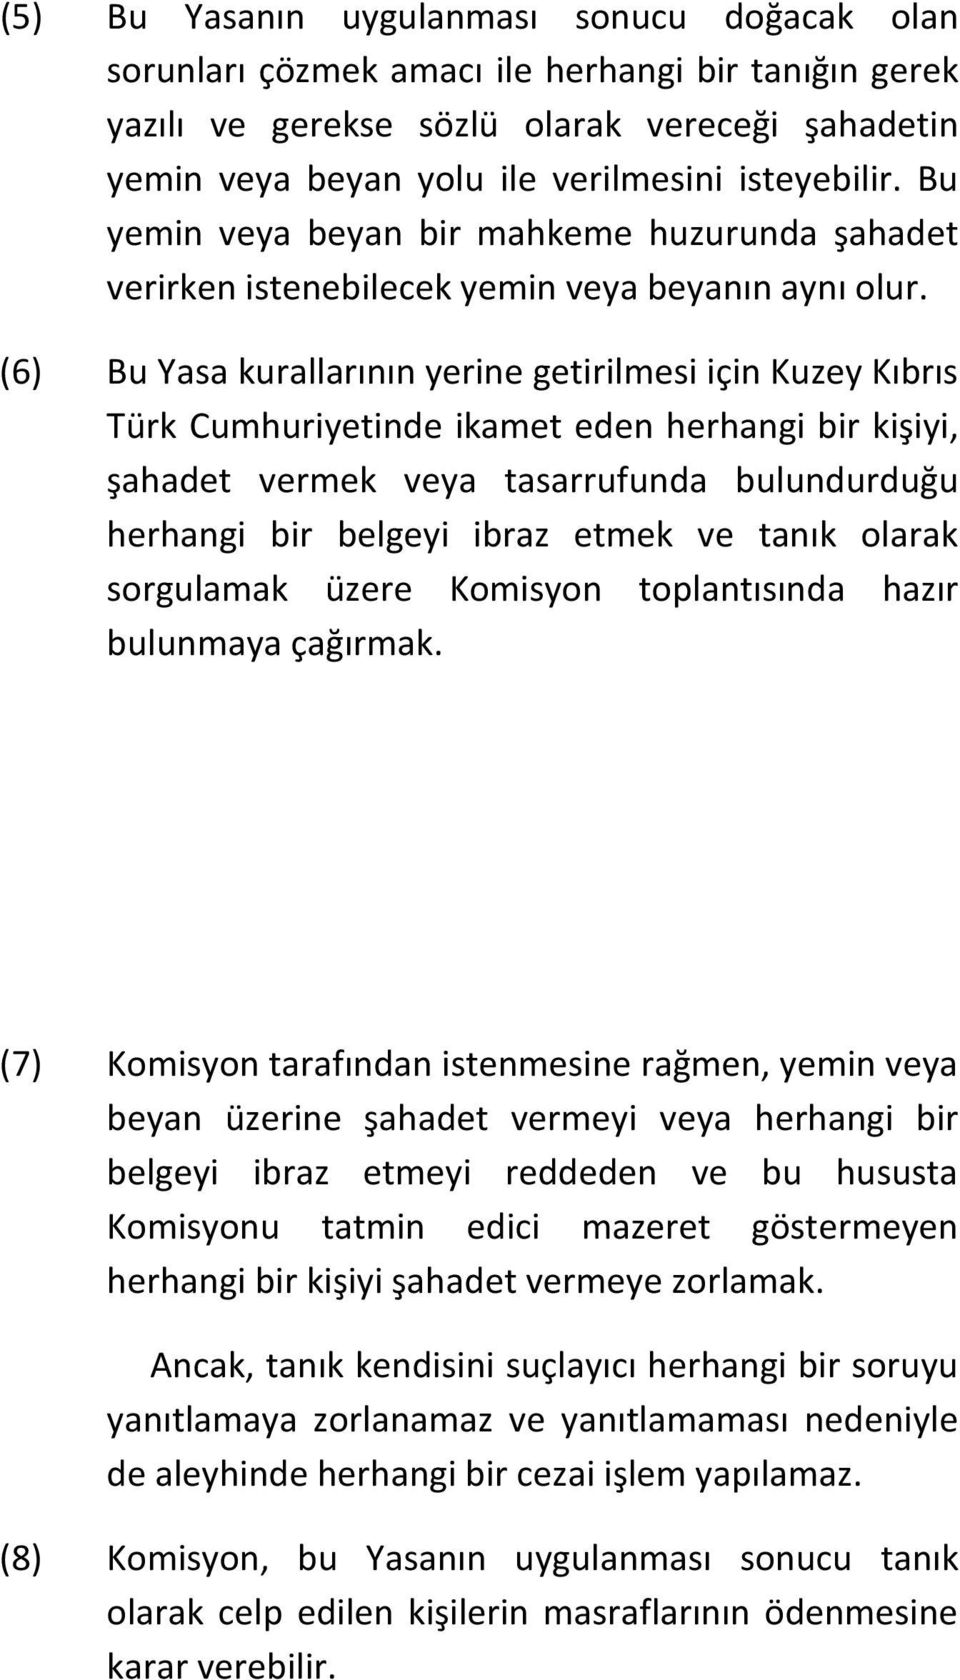 (6) Bu Yasa kurallarının yerine getirilmesi için Kuzey Kıbrıs Türk Cumhuriyetinde ikamet eden herhangi bir kişiyi, şahadet vermek veya tasarrufunda bulundurduğu herhangi bir belgeyi ibraz etmek ve